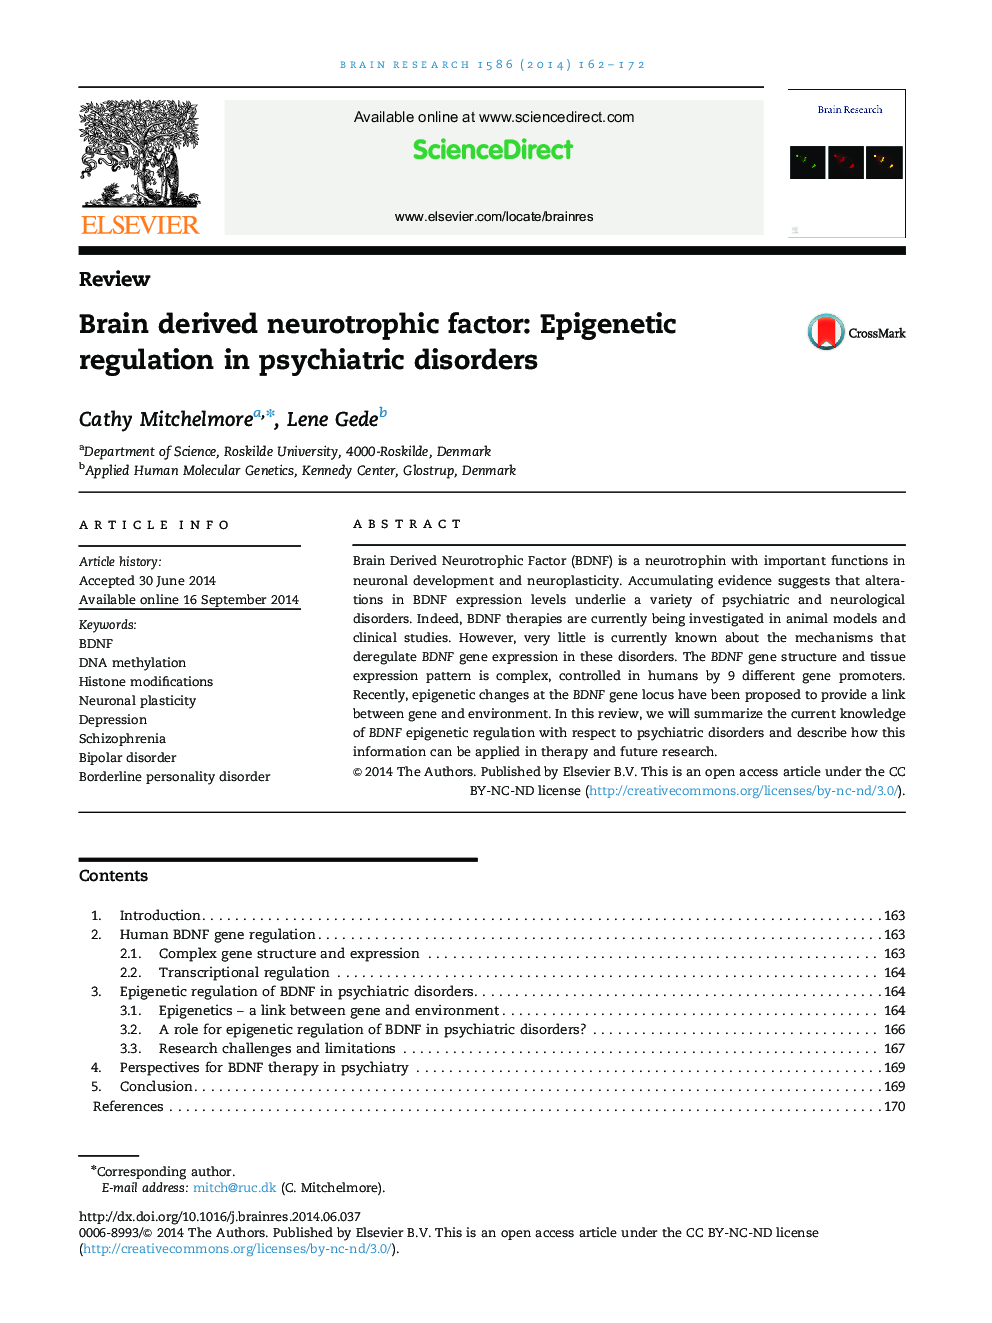 عامل نقص عصبی بررسی شده در نقاط بدن: تنظیم اپی ژنتیک در اختلالات روانپزشکی 